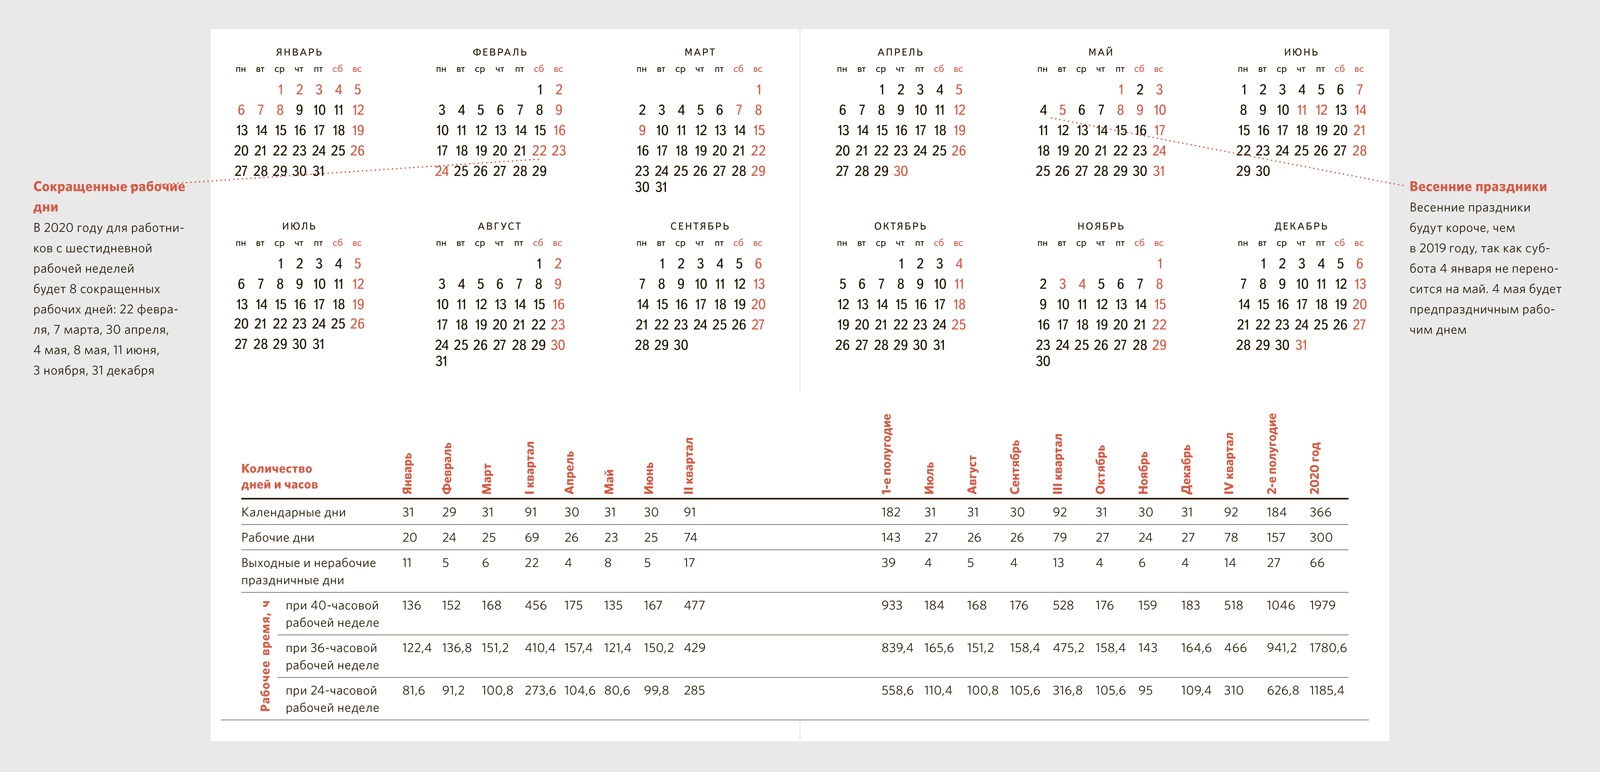 Выходные для 6 дневной недели. Производственный календарь на 2020 год для пятидневной рабочей недели. Календарь кадровика. Производств календ 2020. Производственный календарь кадровика.